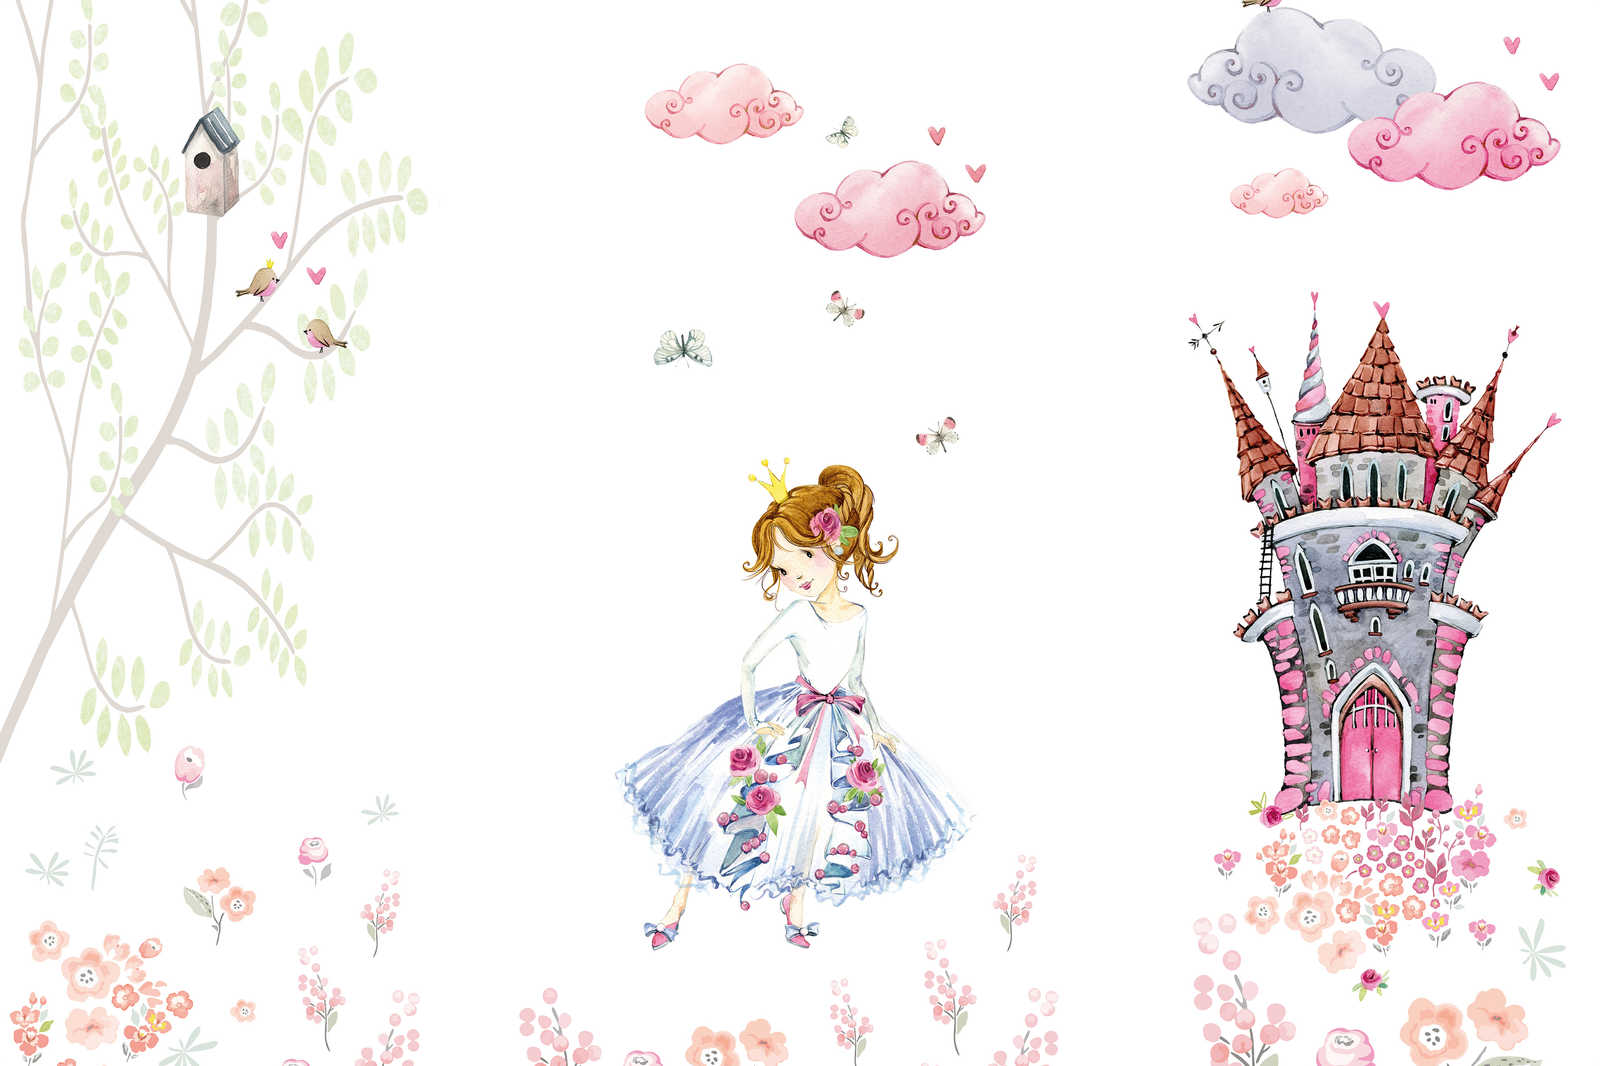             Tableau toile avec princesse dans le jardin du château chambre d'enfant - 0,90 m x 0,60 m
        